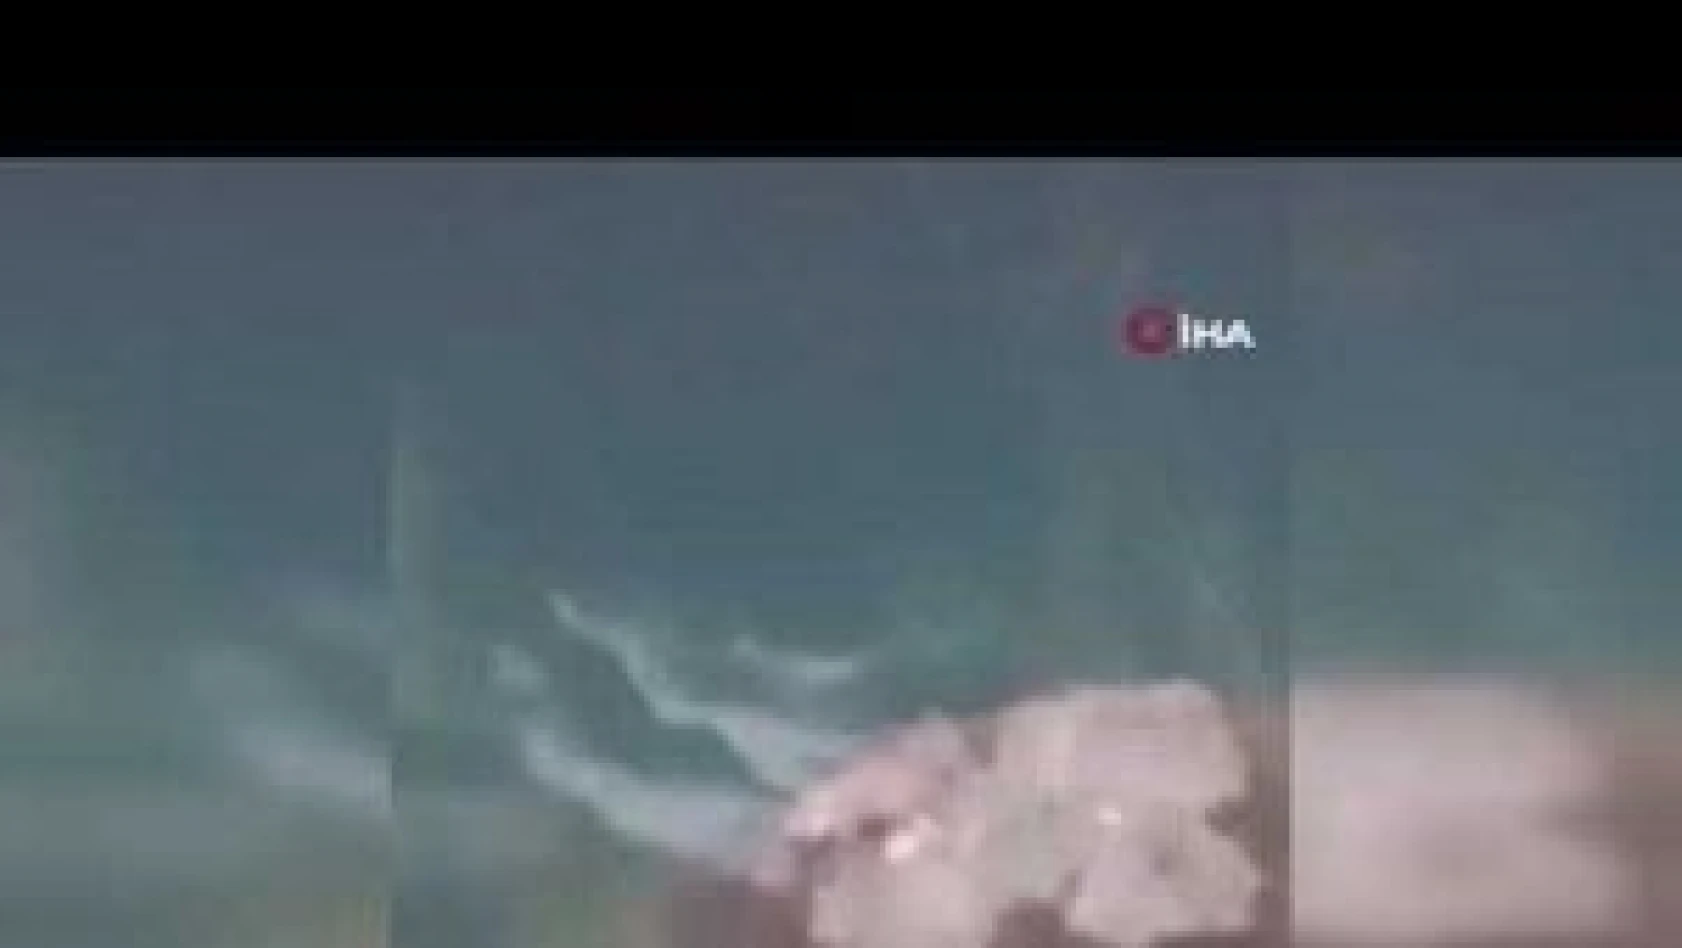 Tunceli'de koruma altında bulunan su samuru görüntülendi